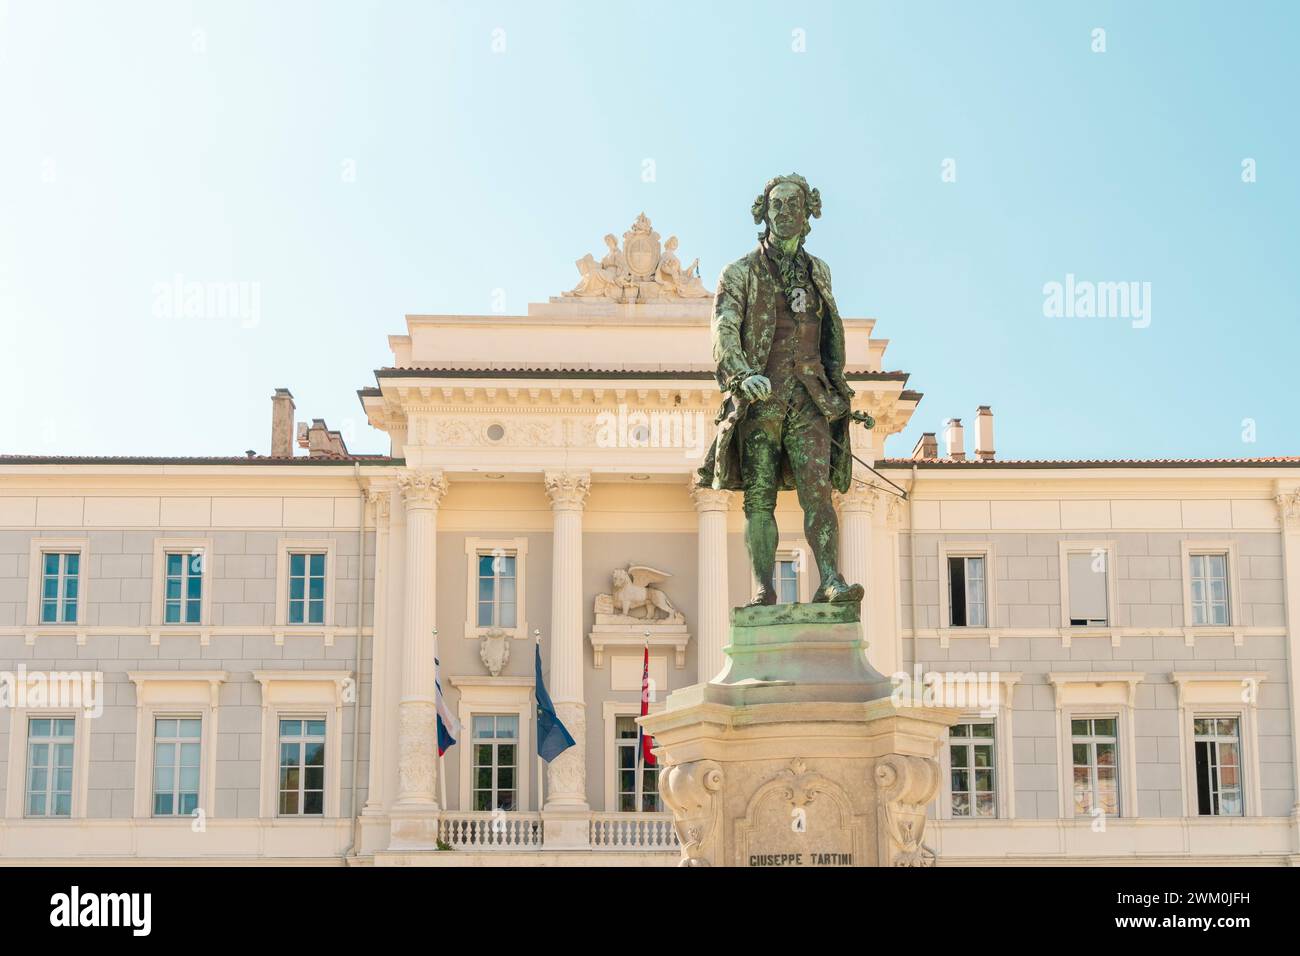 Slovenia, Coastal-Karst, Piran, Statue of Giuseppe Tartini in front of town hall Stock Photo